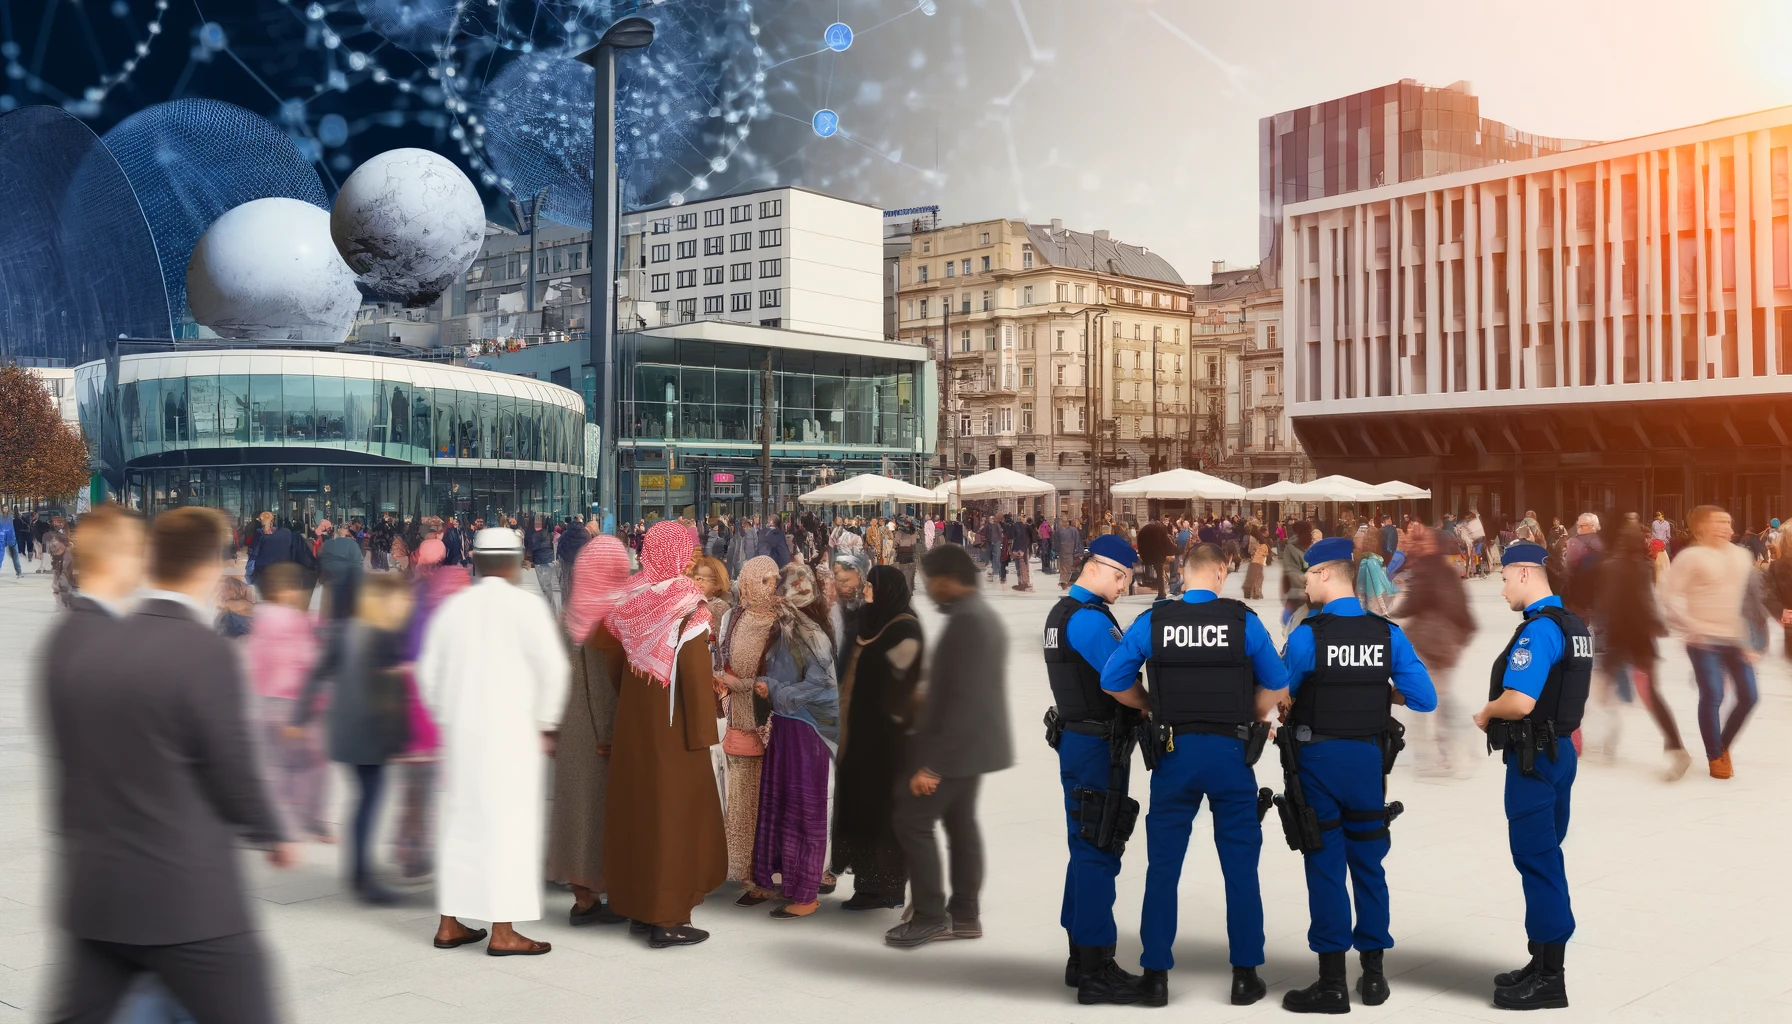 Wielokulturowość na listach poszukiwanych: Wyzwanie dla polskiej policji i społeczeństwa